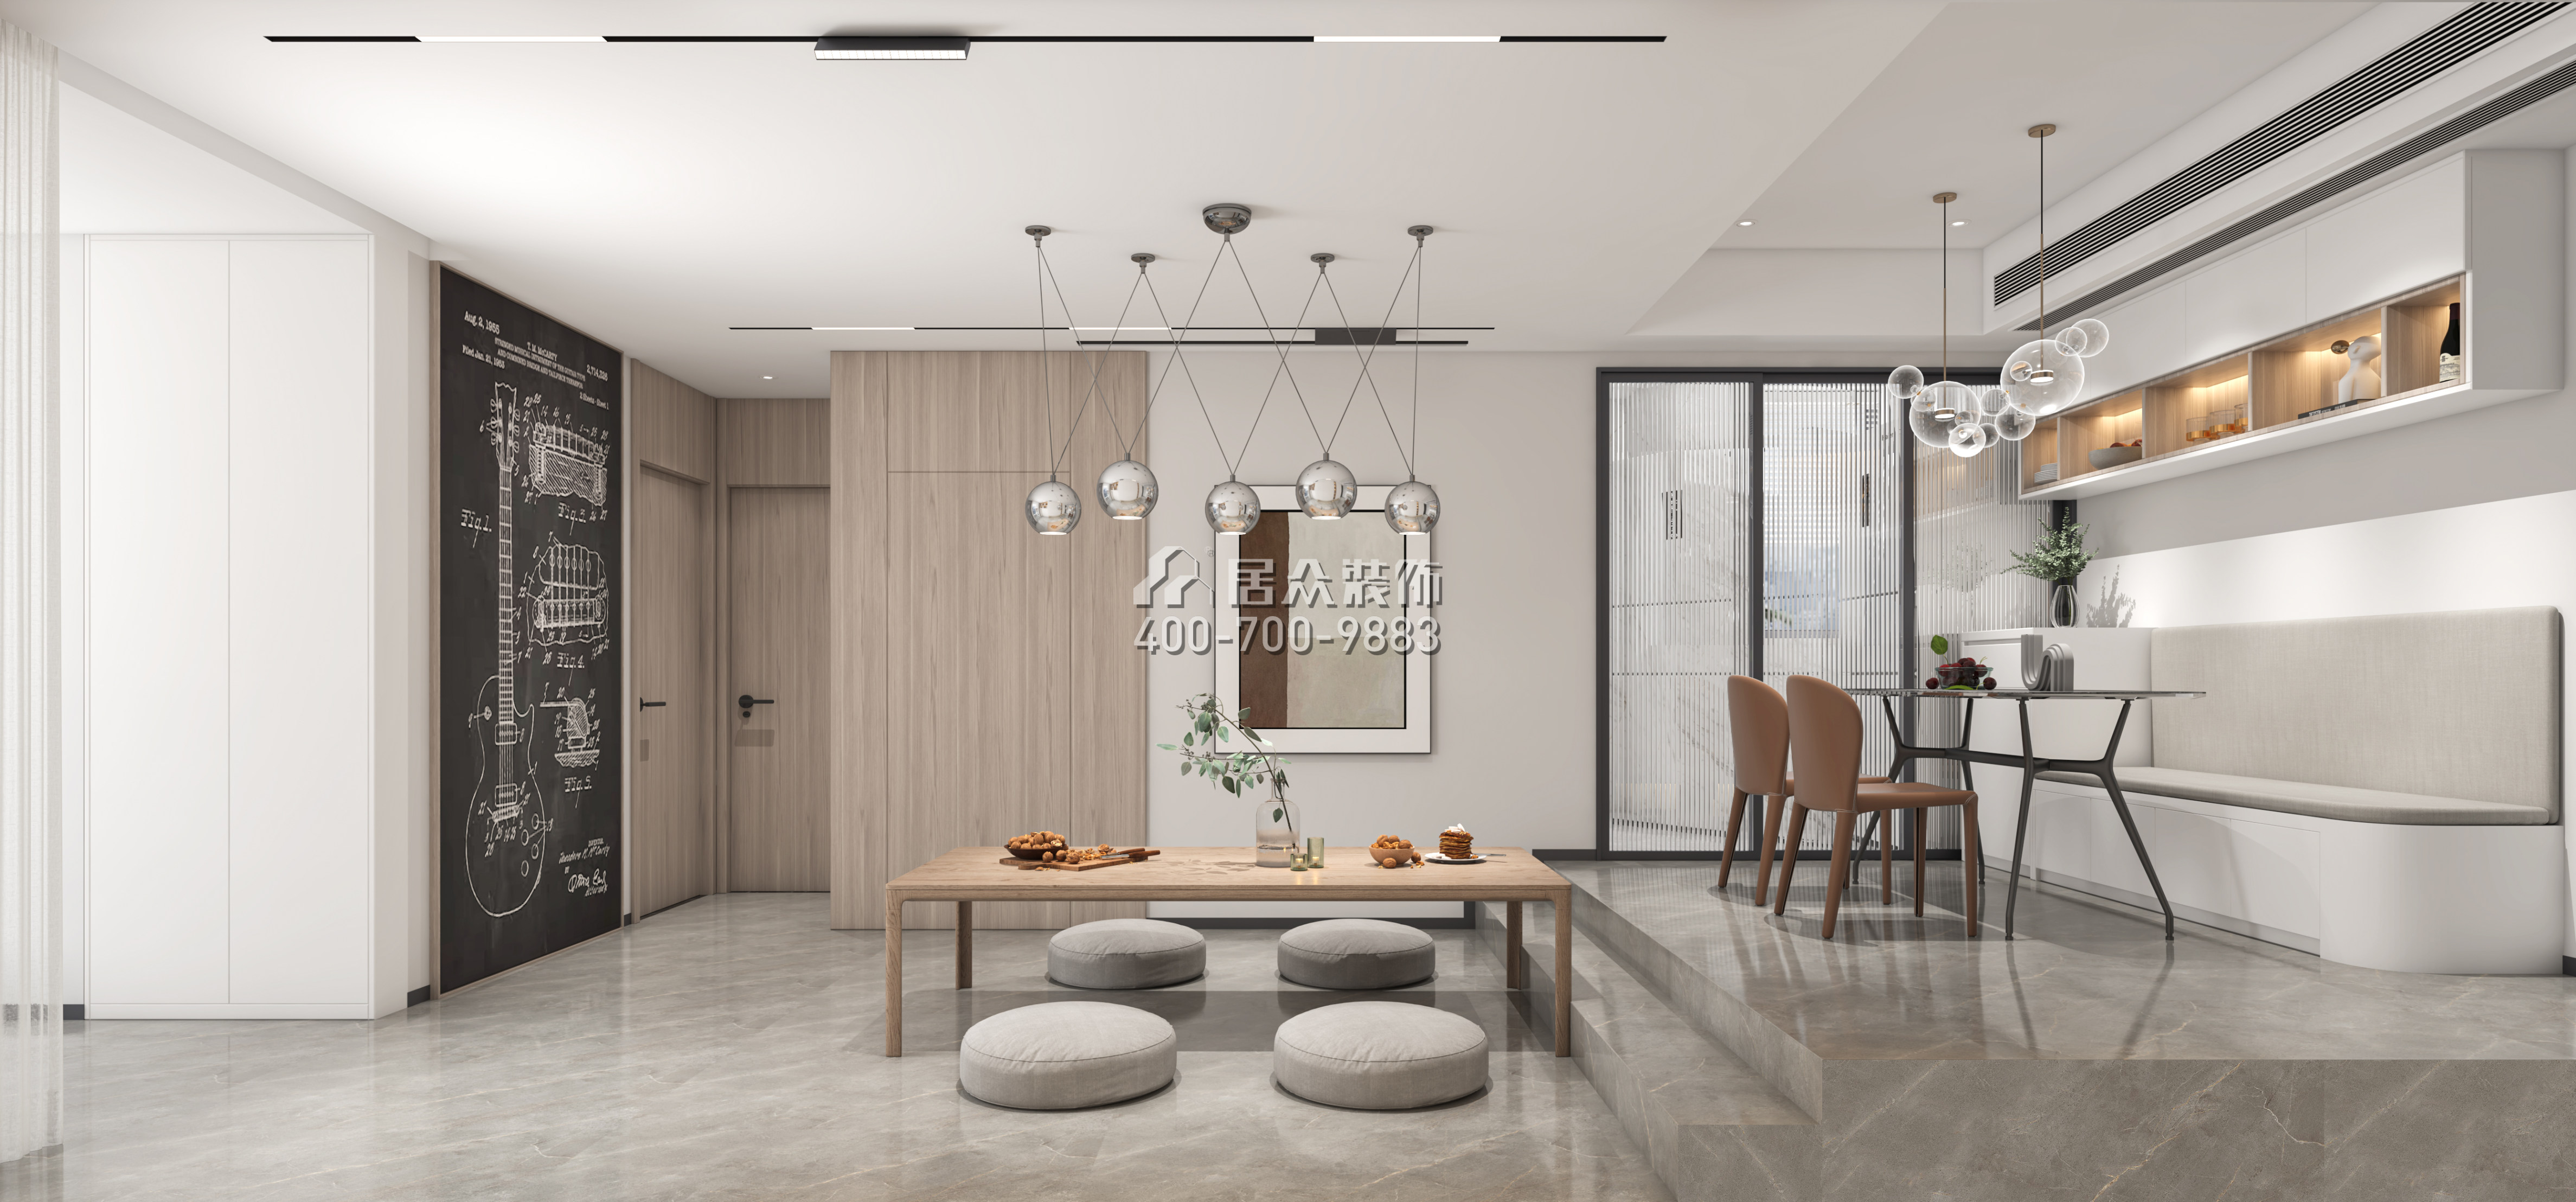 嘉州豪園100平方米現代簡約風格平層戶型客餐廳一體裝修效果圖